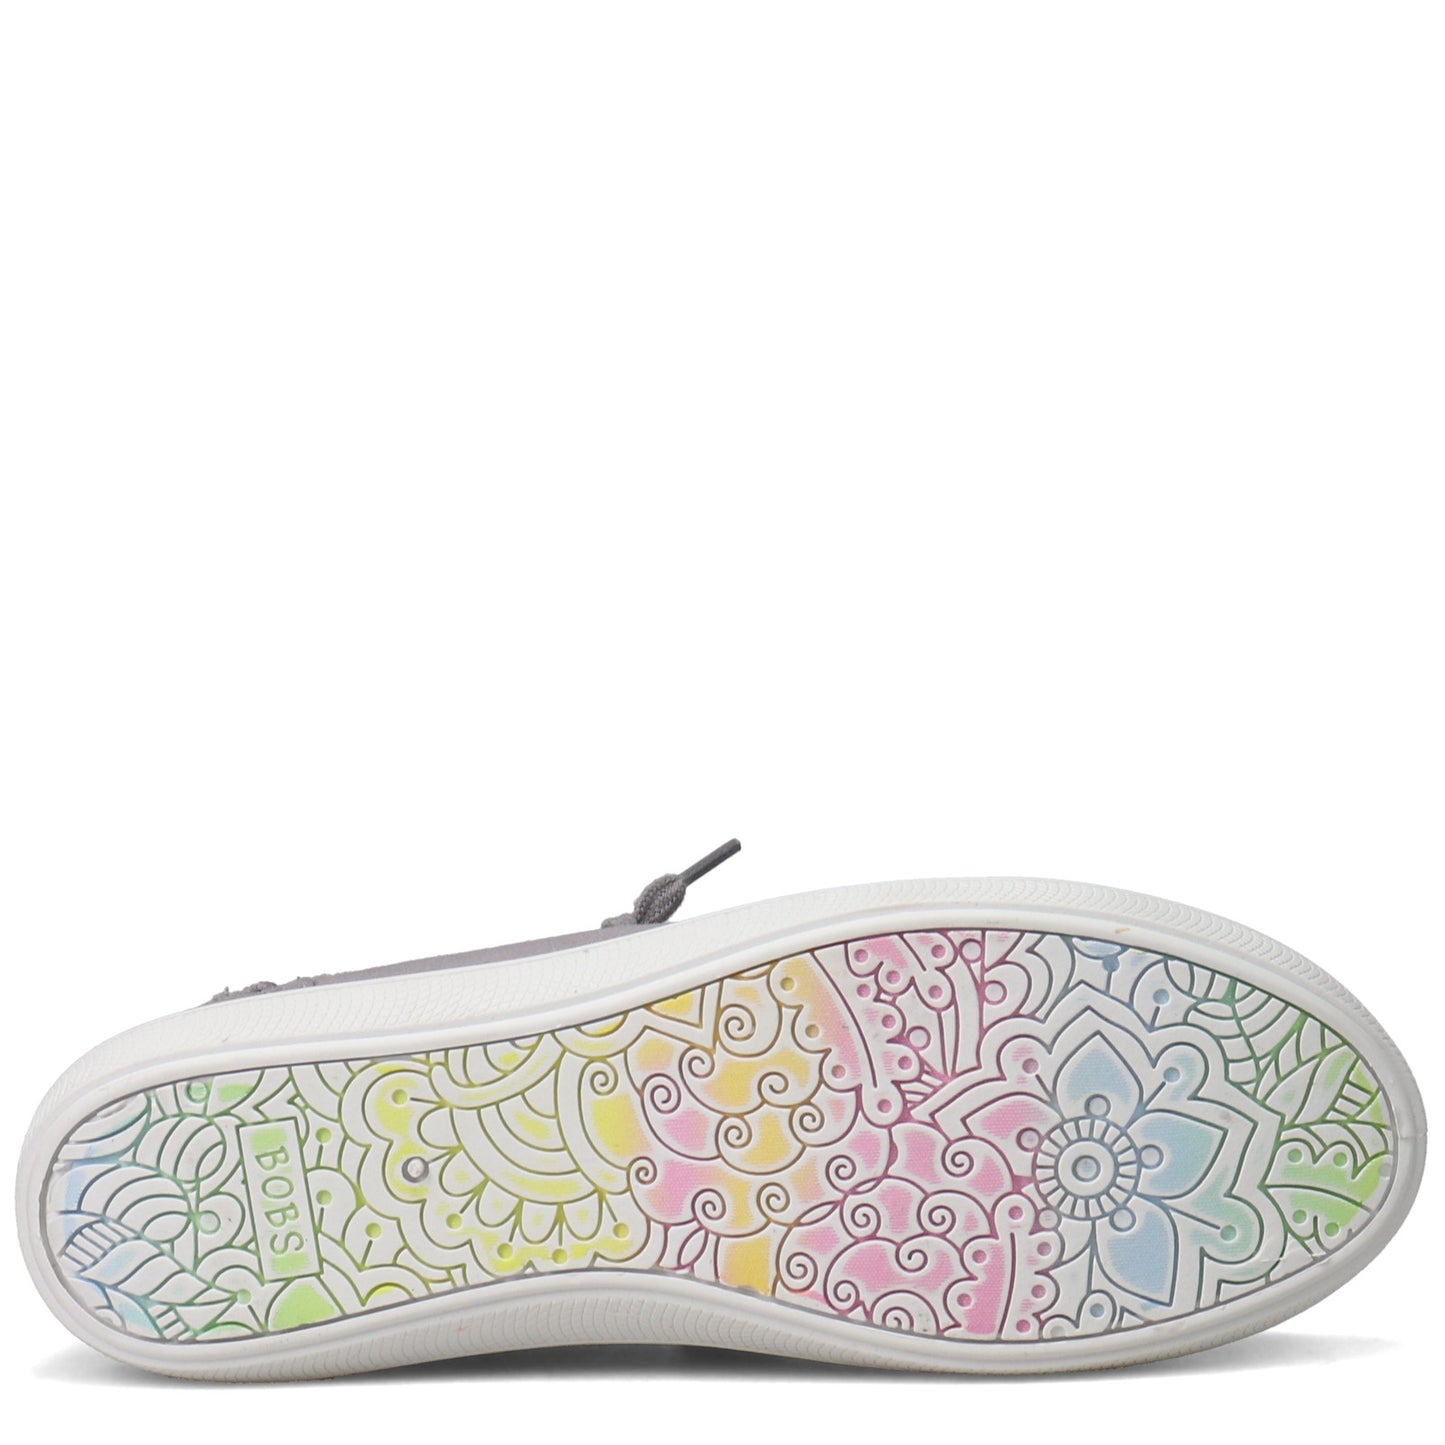 Peltz Shoes  Women's Skechers BOBS B Cute Sneaker GRAY 33492-GRY